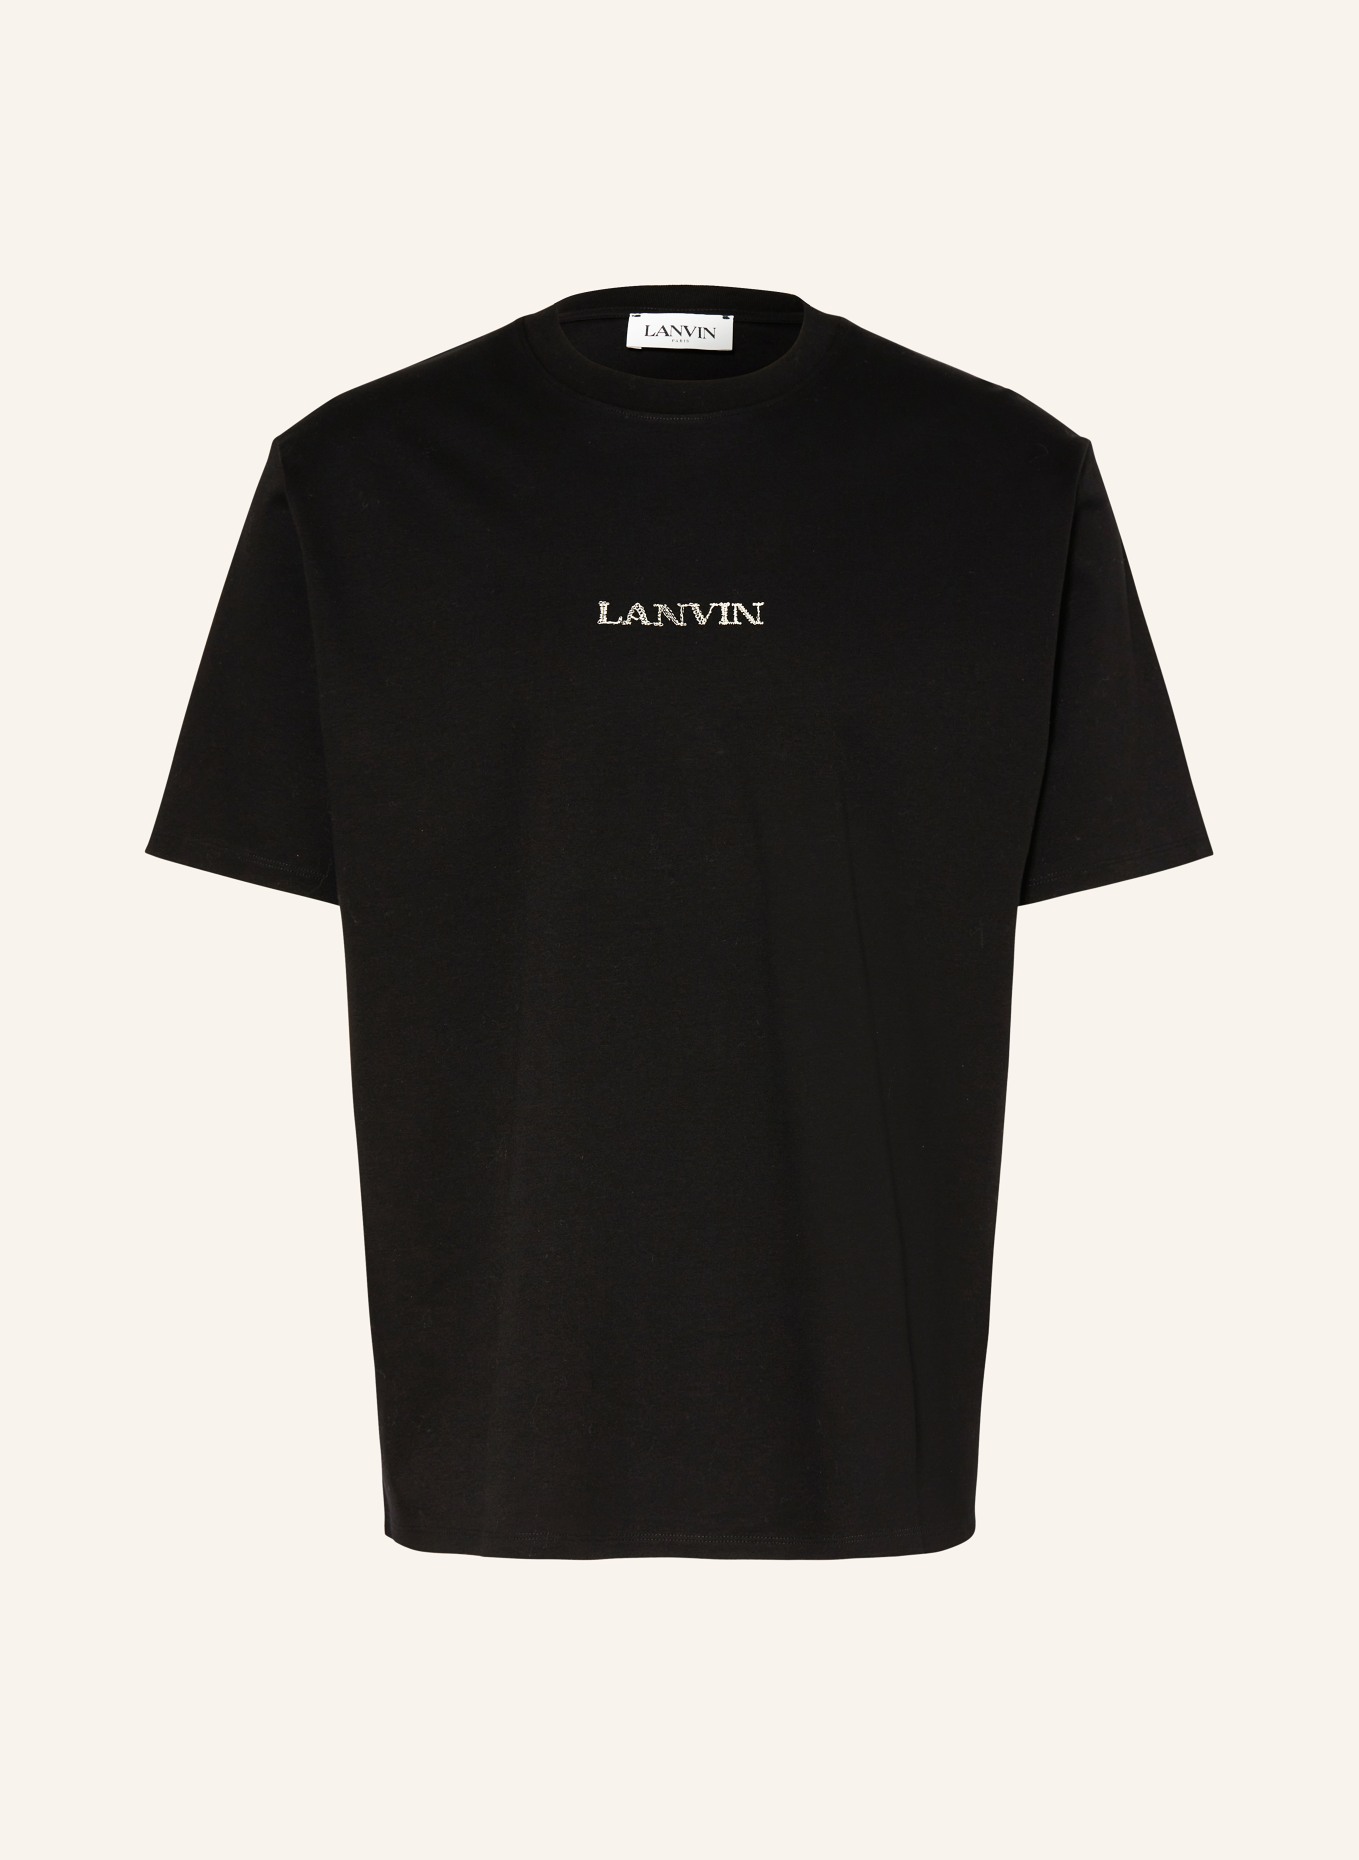 LANVIN T-Shirt, Farbe: SCHWARZ (Bild 1)